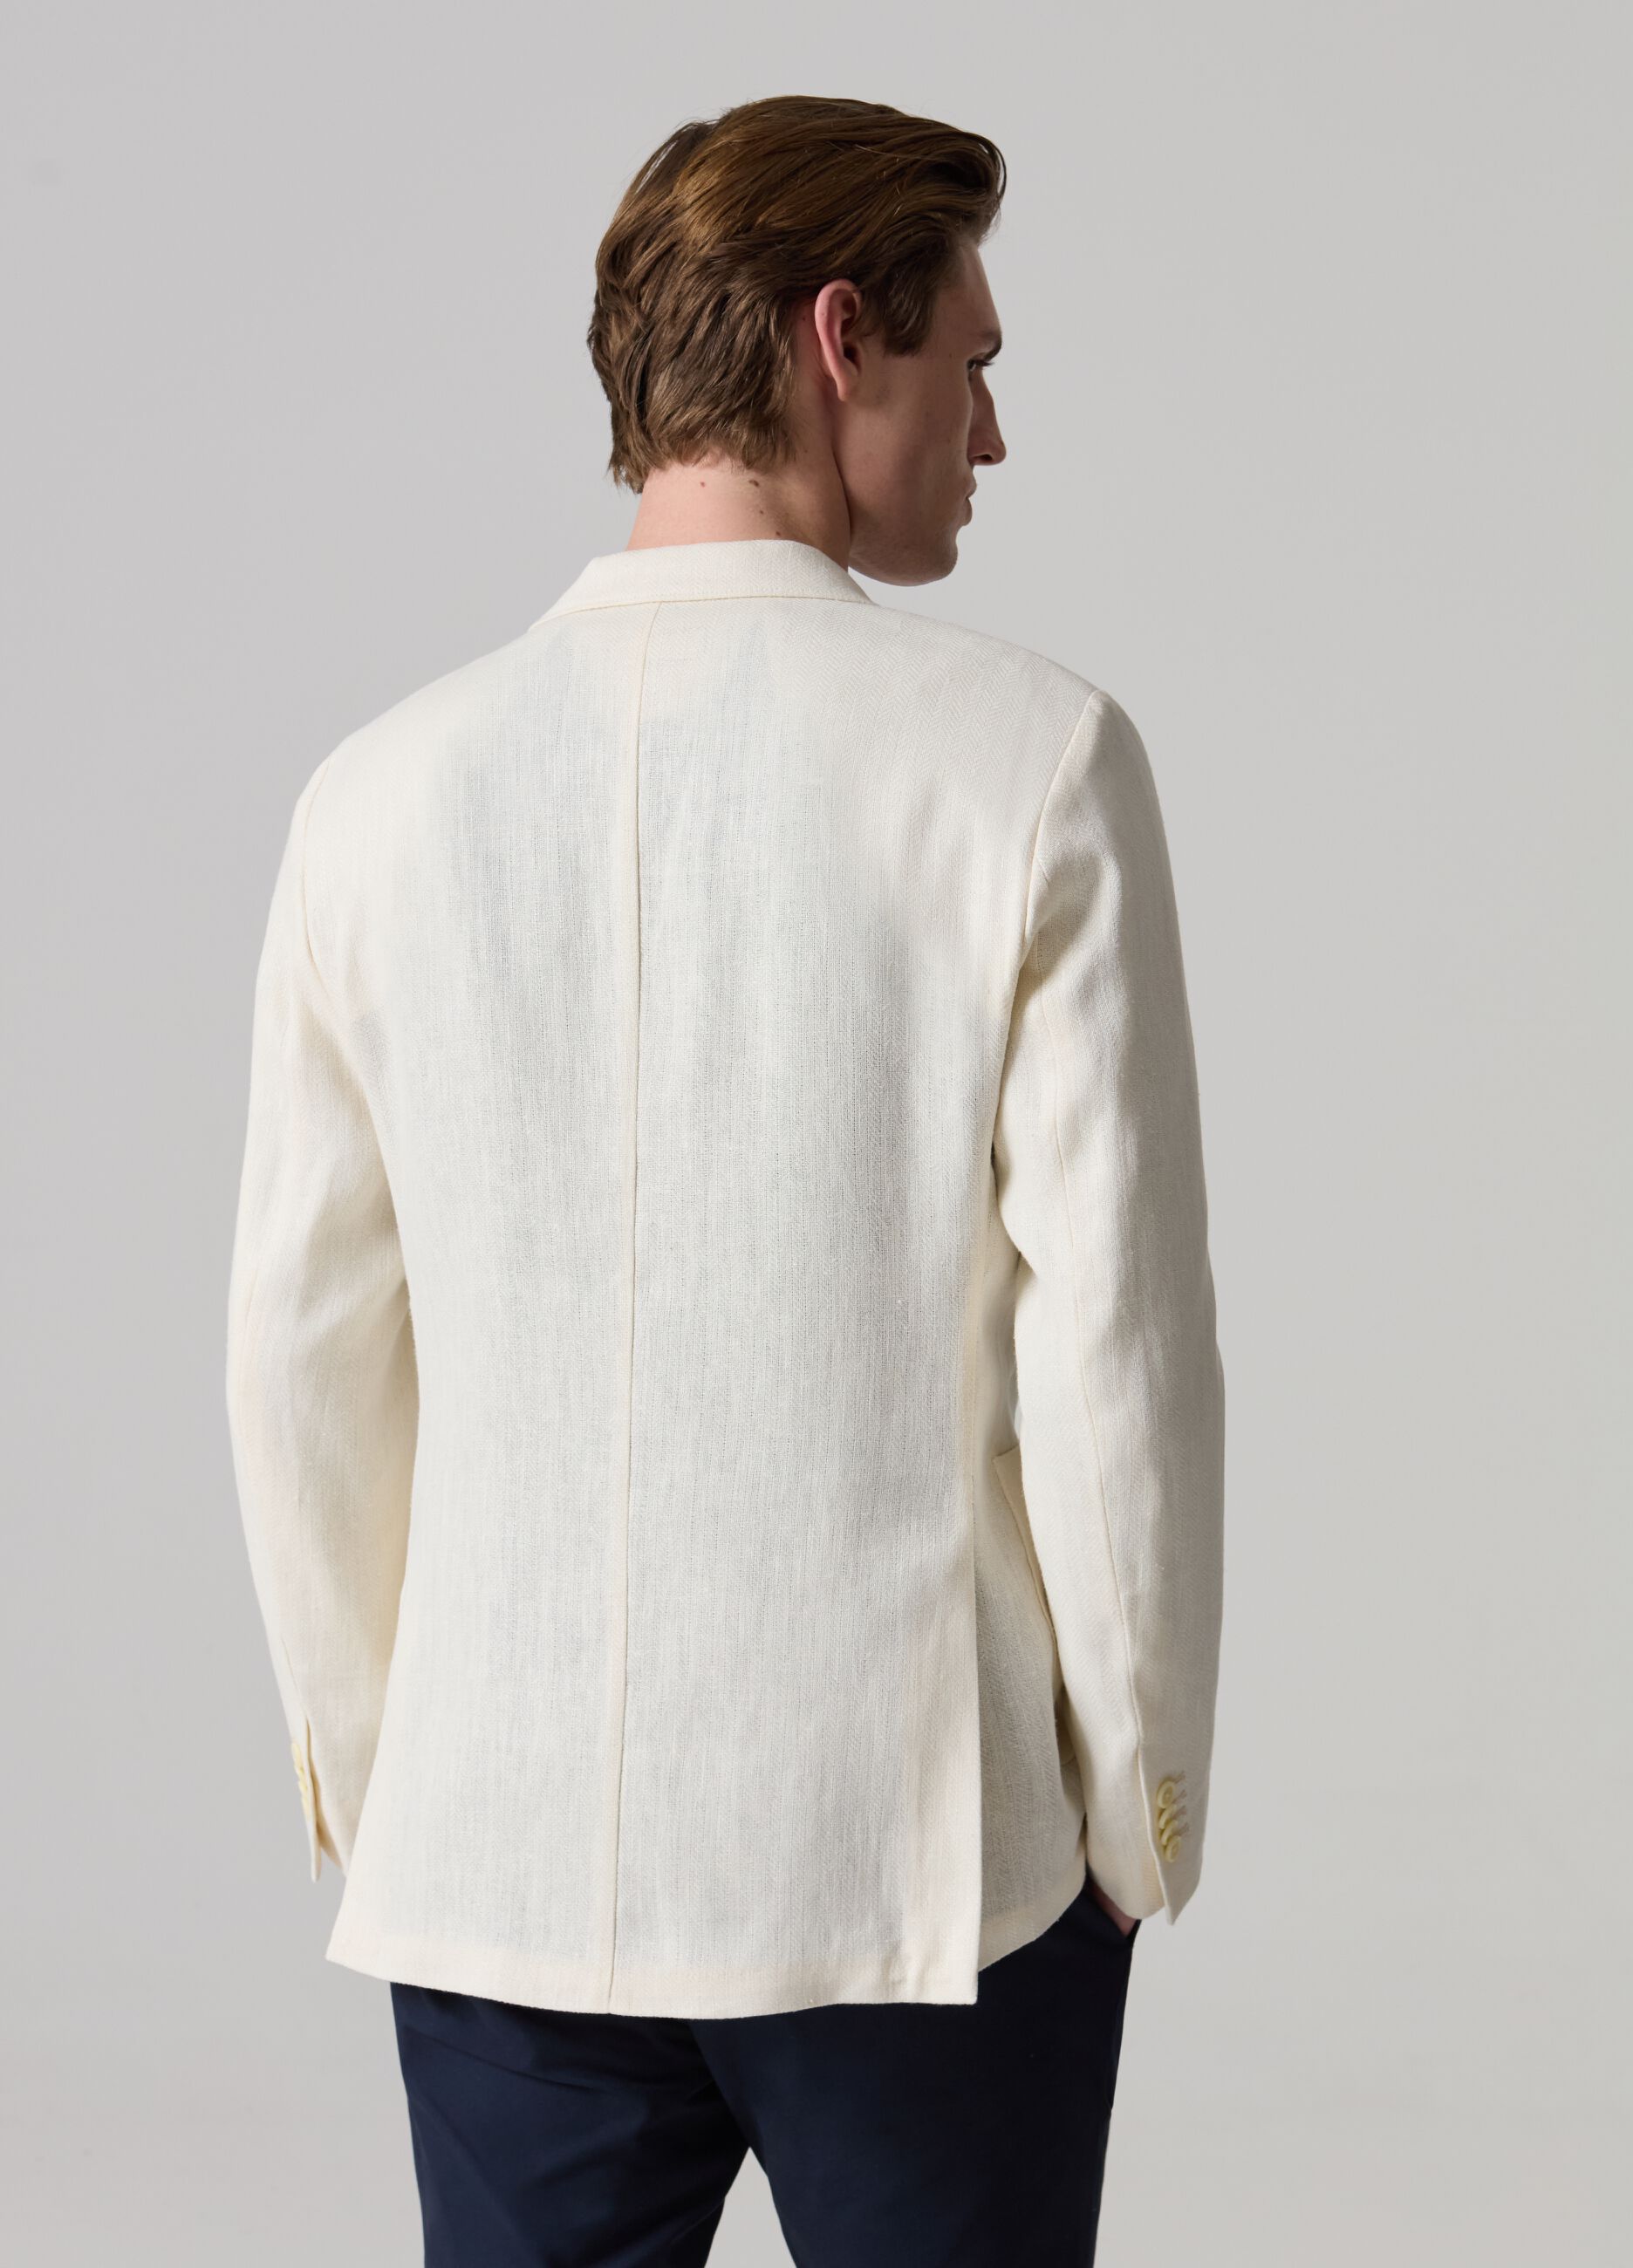 Contemporary single-breasted blazer in linen